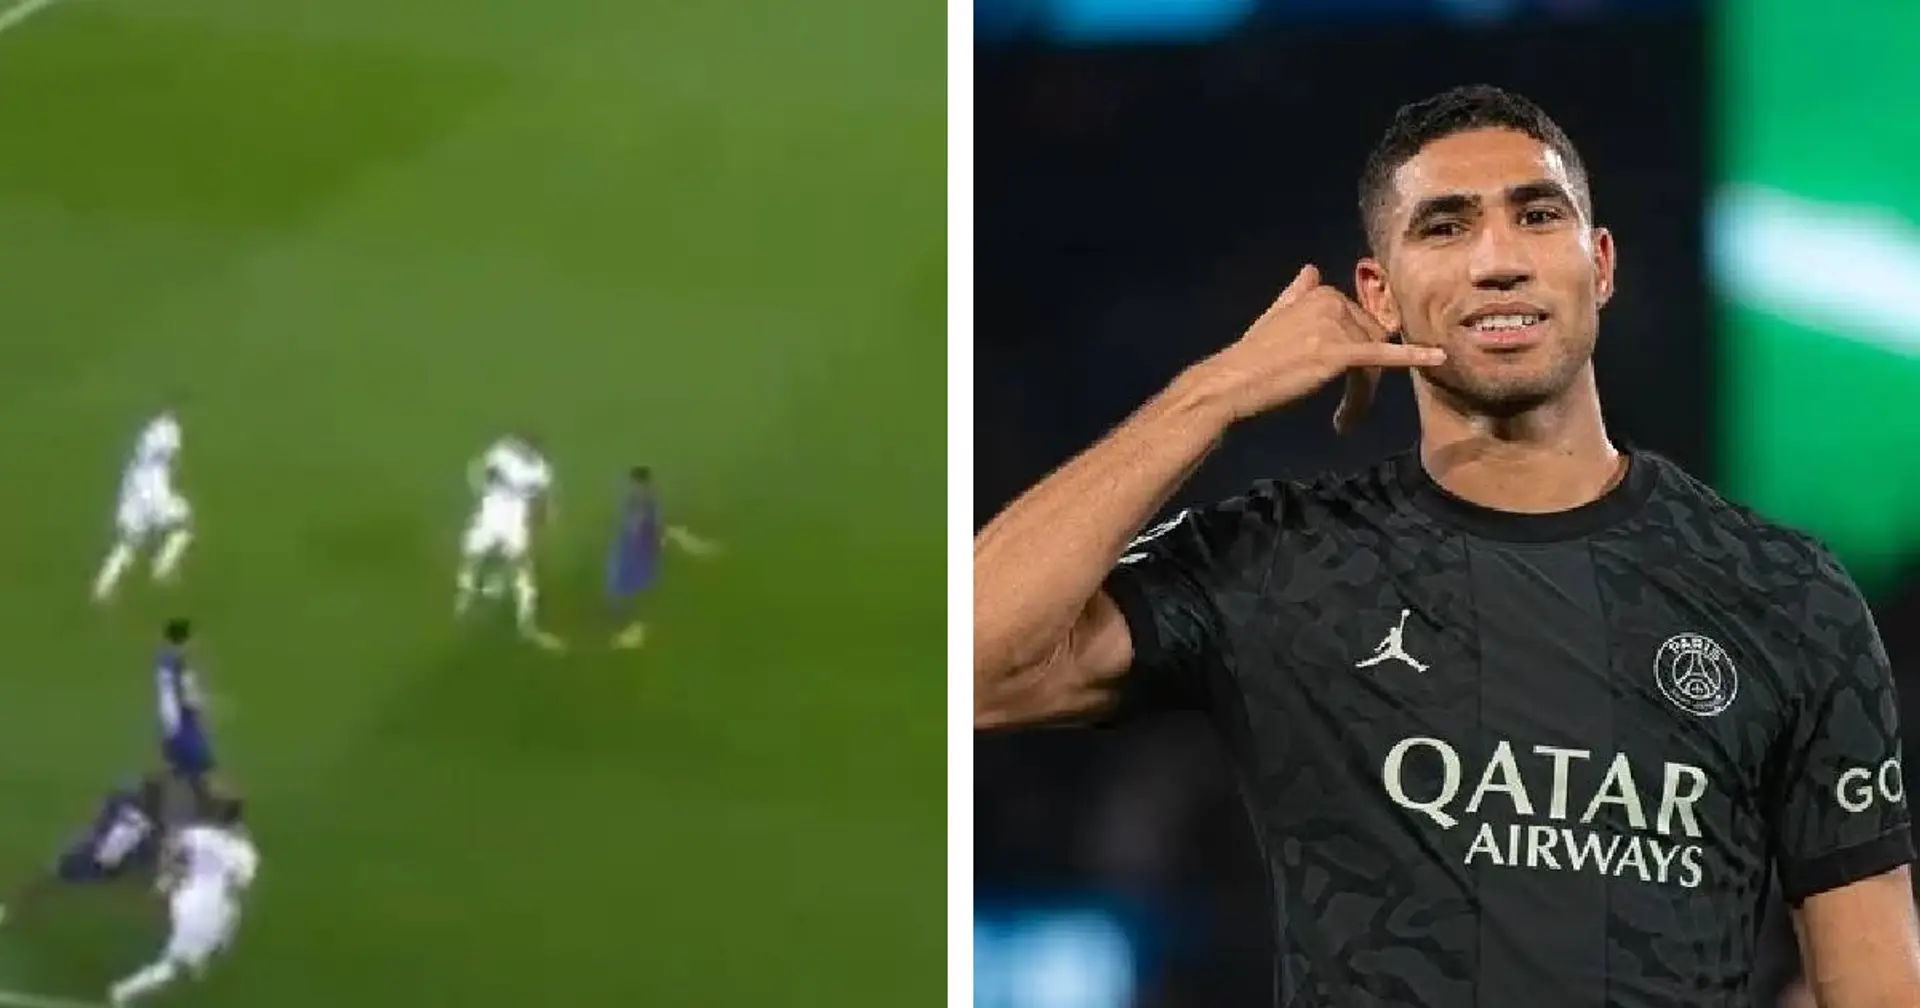 Aperçu : Une séquence de sortie de balle à trois vs Barcelone montre toute la technique du PSG